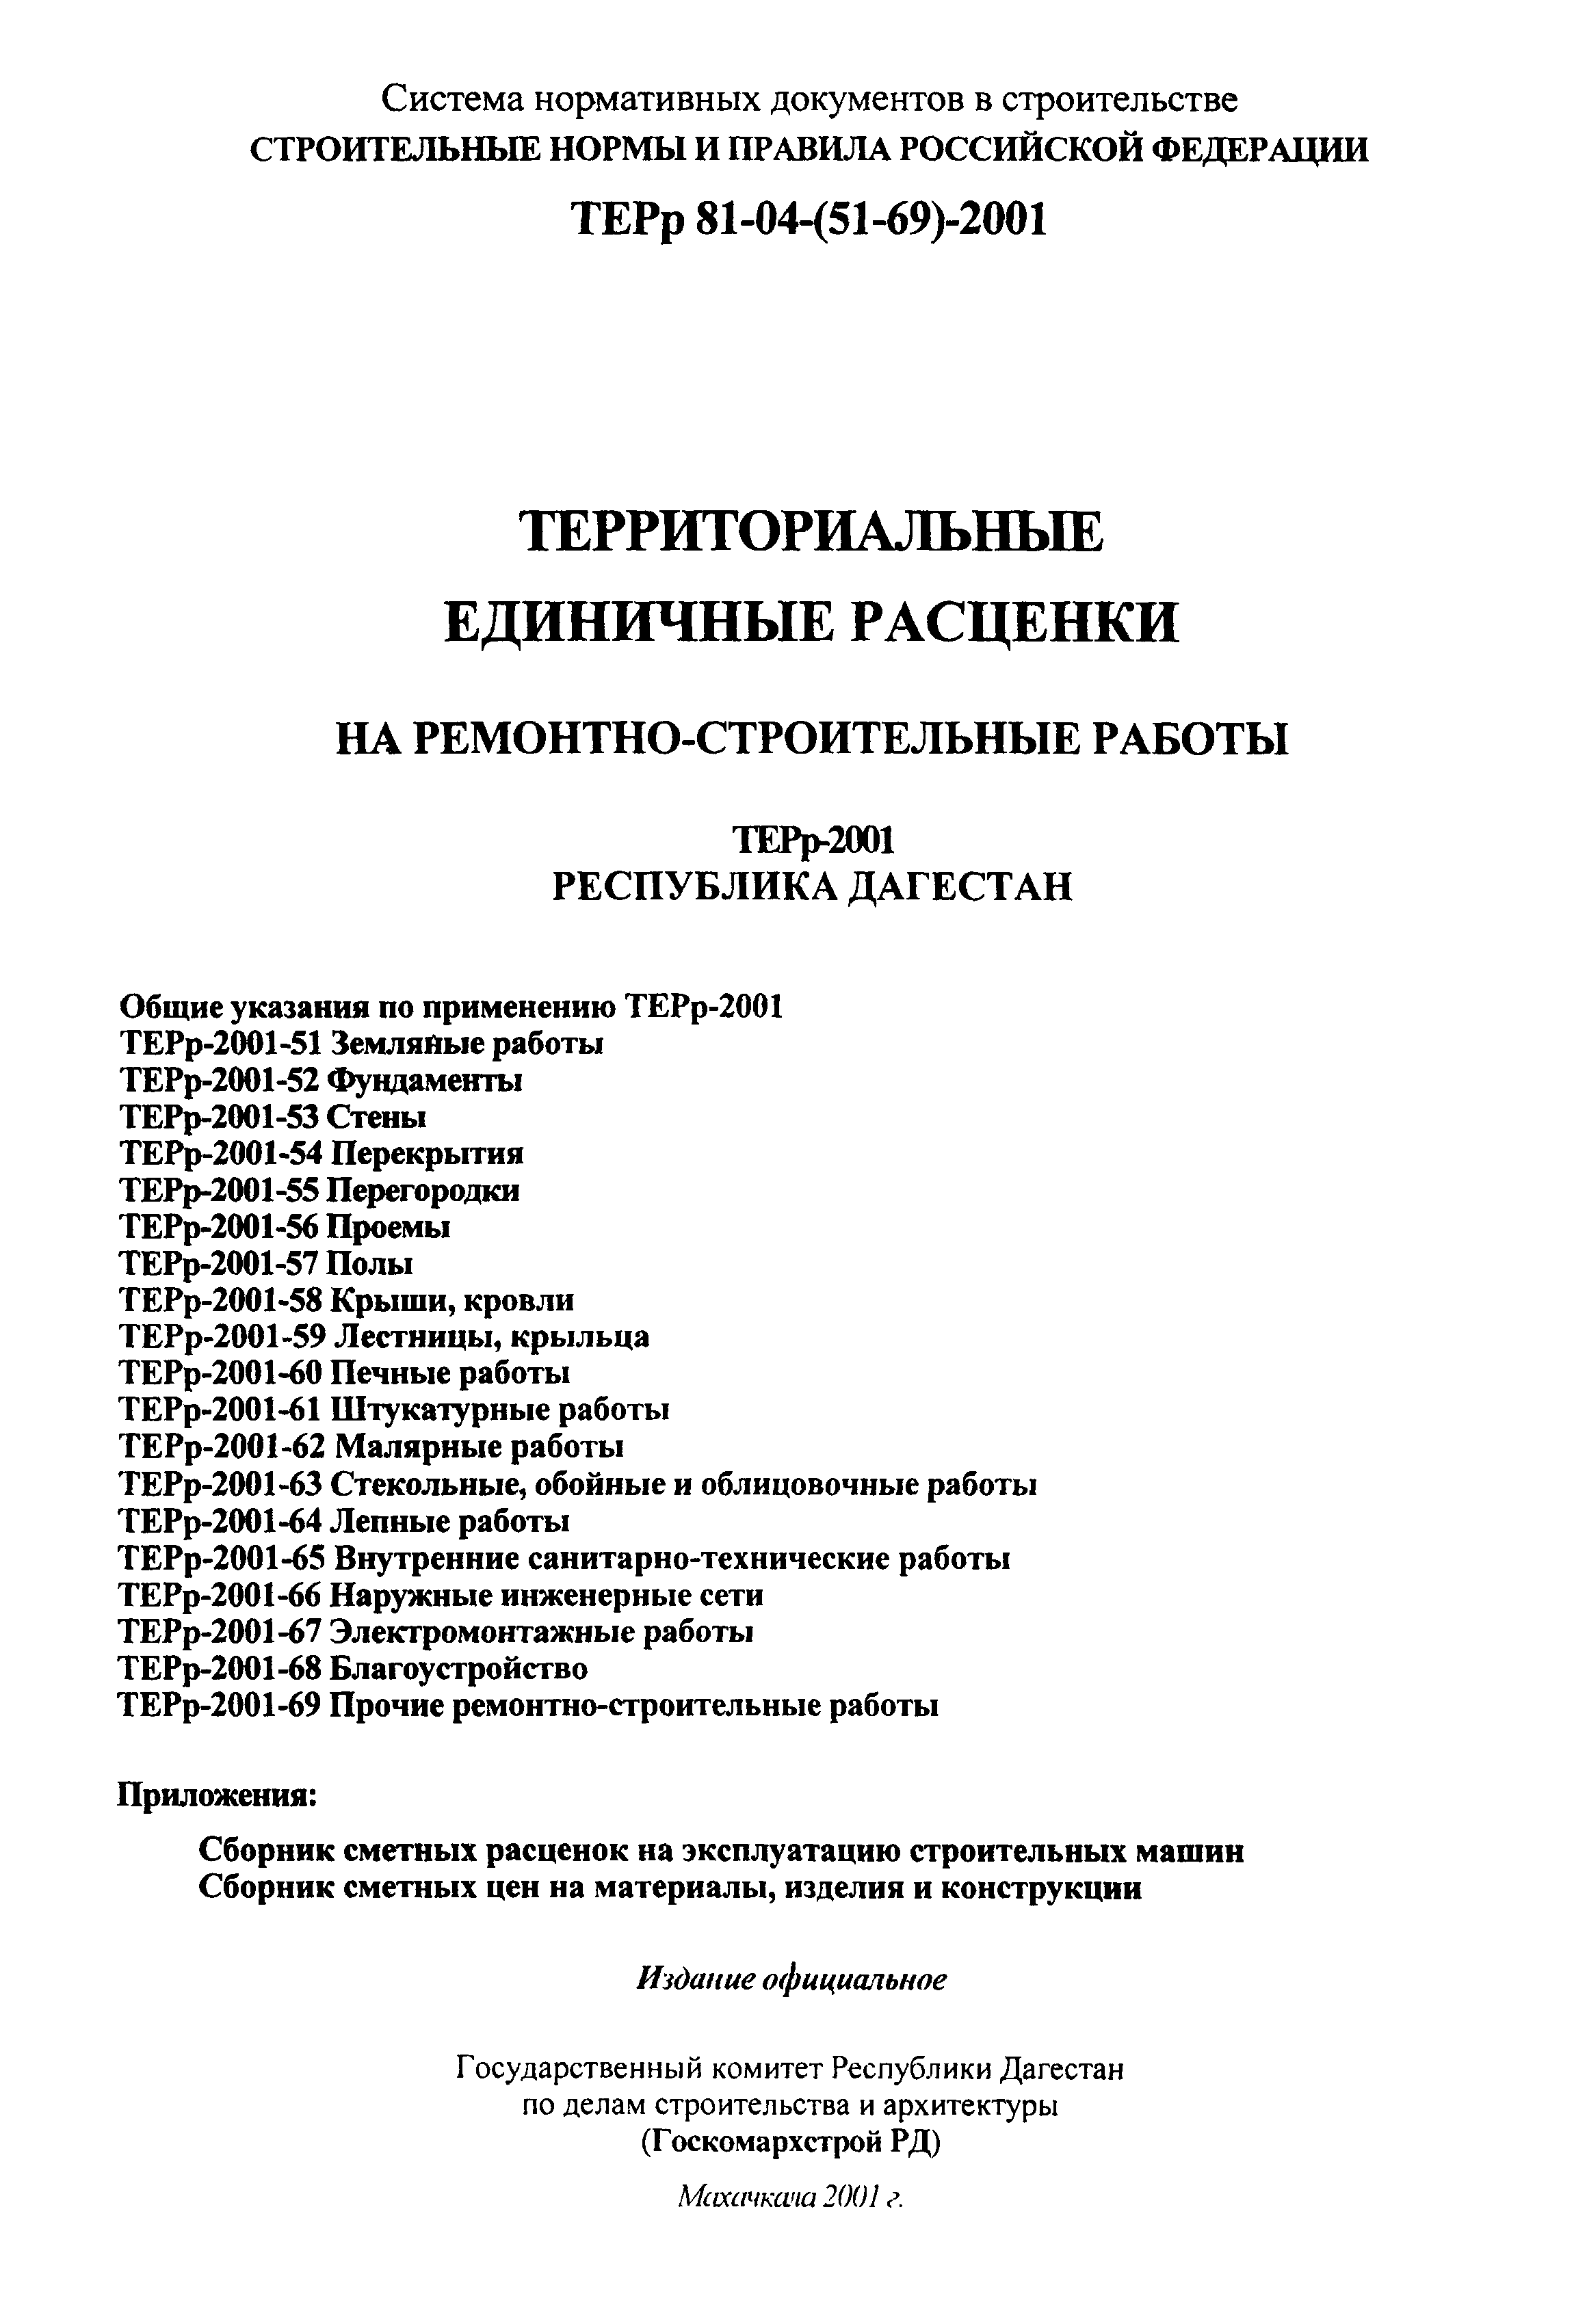 ТЕРр Республика Дагестан 2001-56